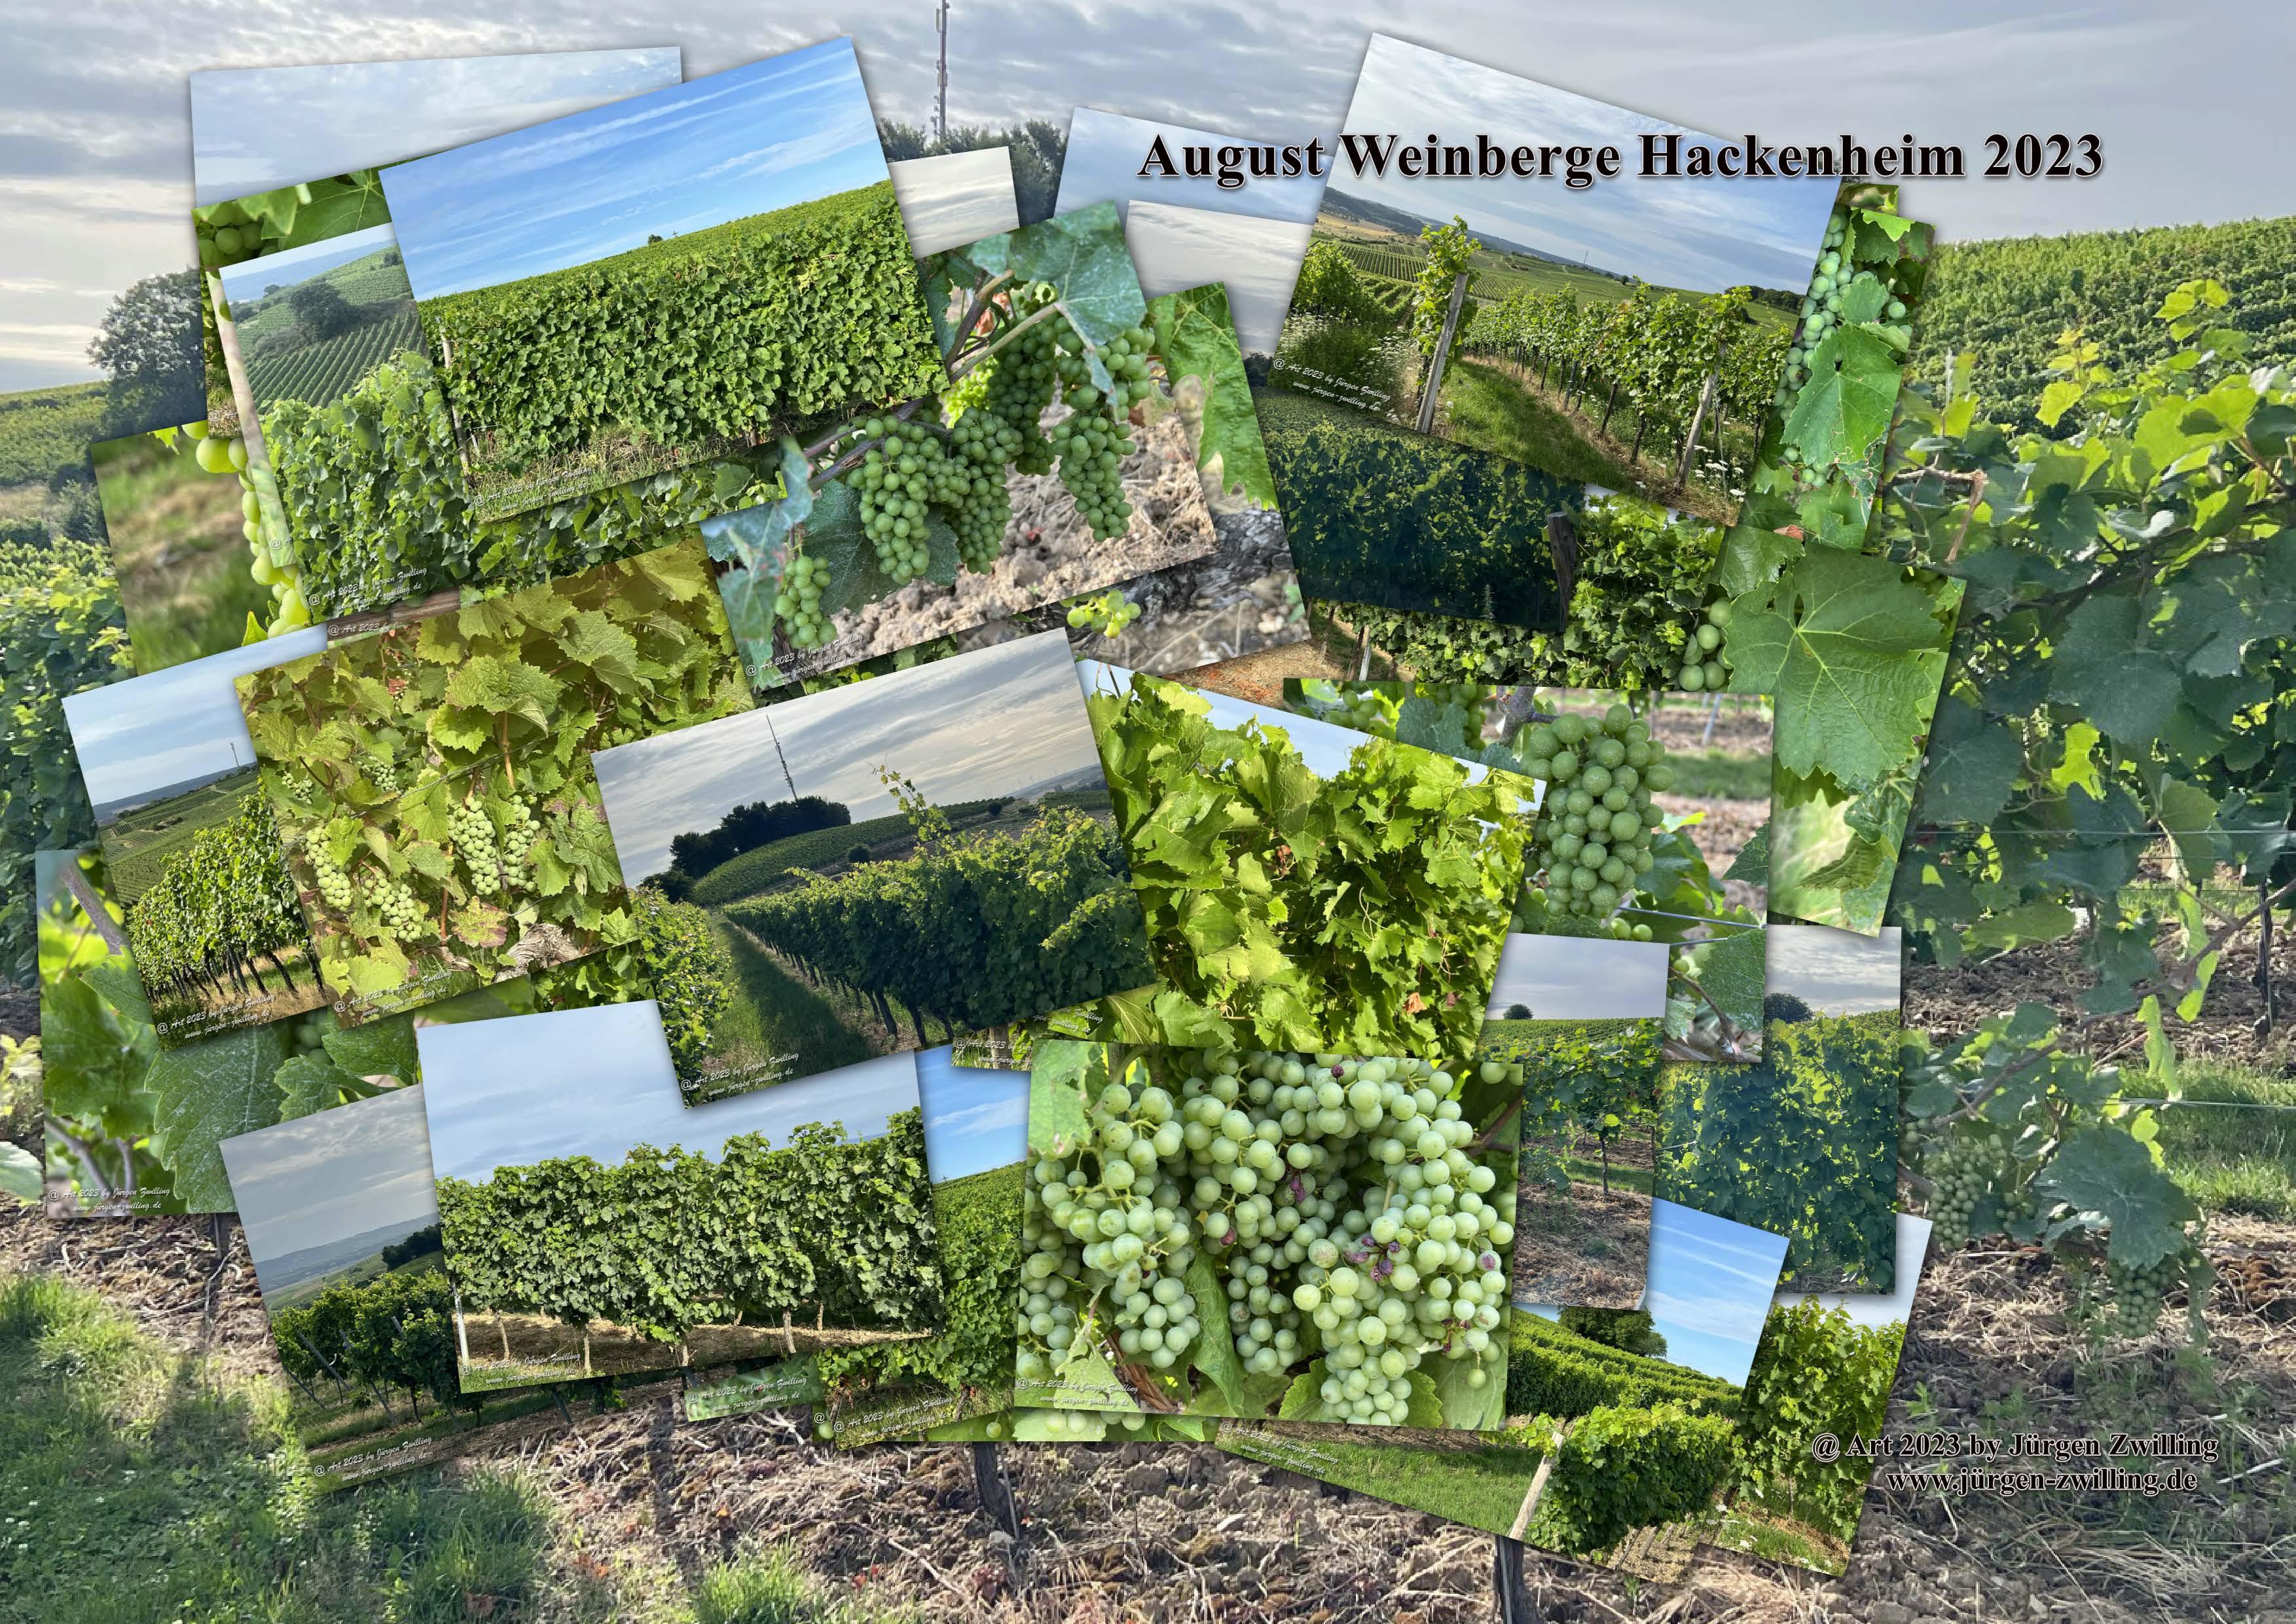 August Weinberge 2023 - Hackenheim Rheinhessen